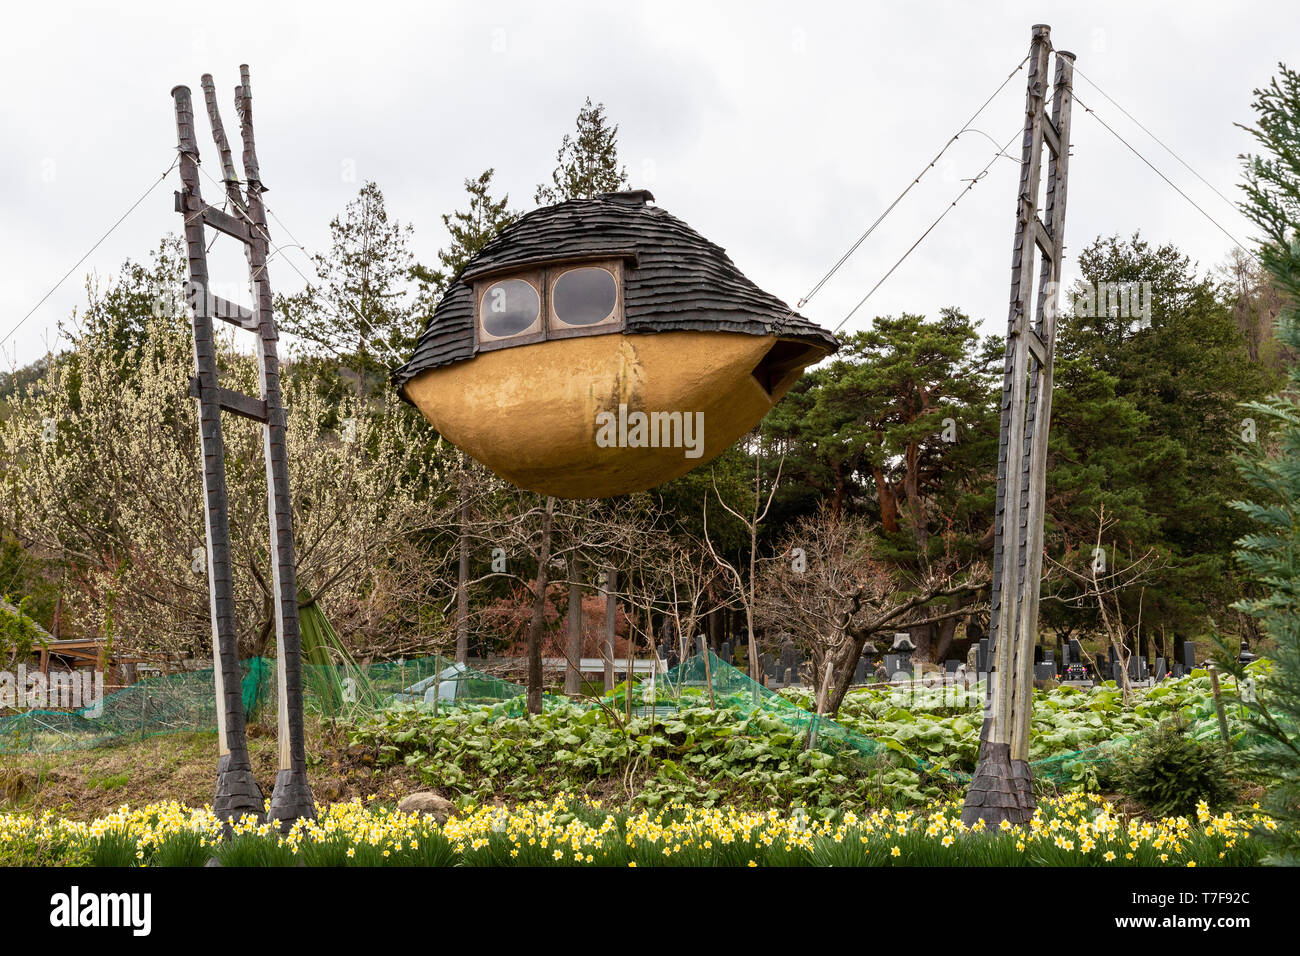 Die fliegender Schlamm Boot ist eine geheimnisvolle Gebäude mit Bäume ragen aus dem Dach. Die vier hervorstehende Holzsäulen aus vor Ort gefertigten Bäume, Stockfoto